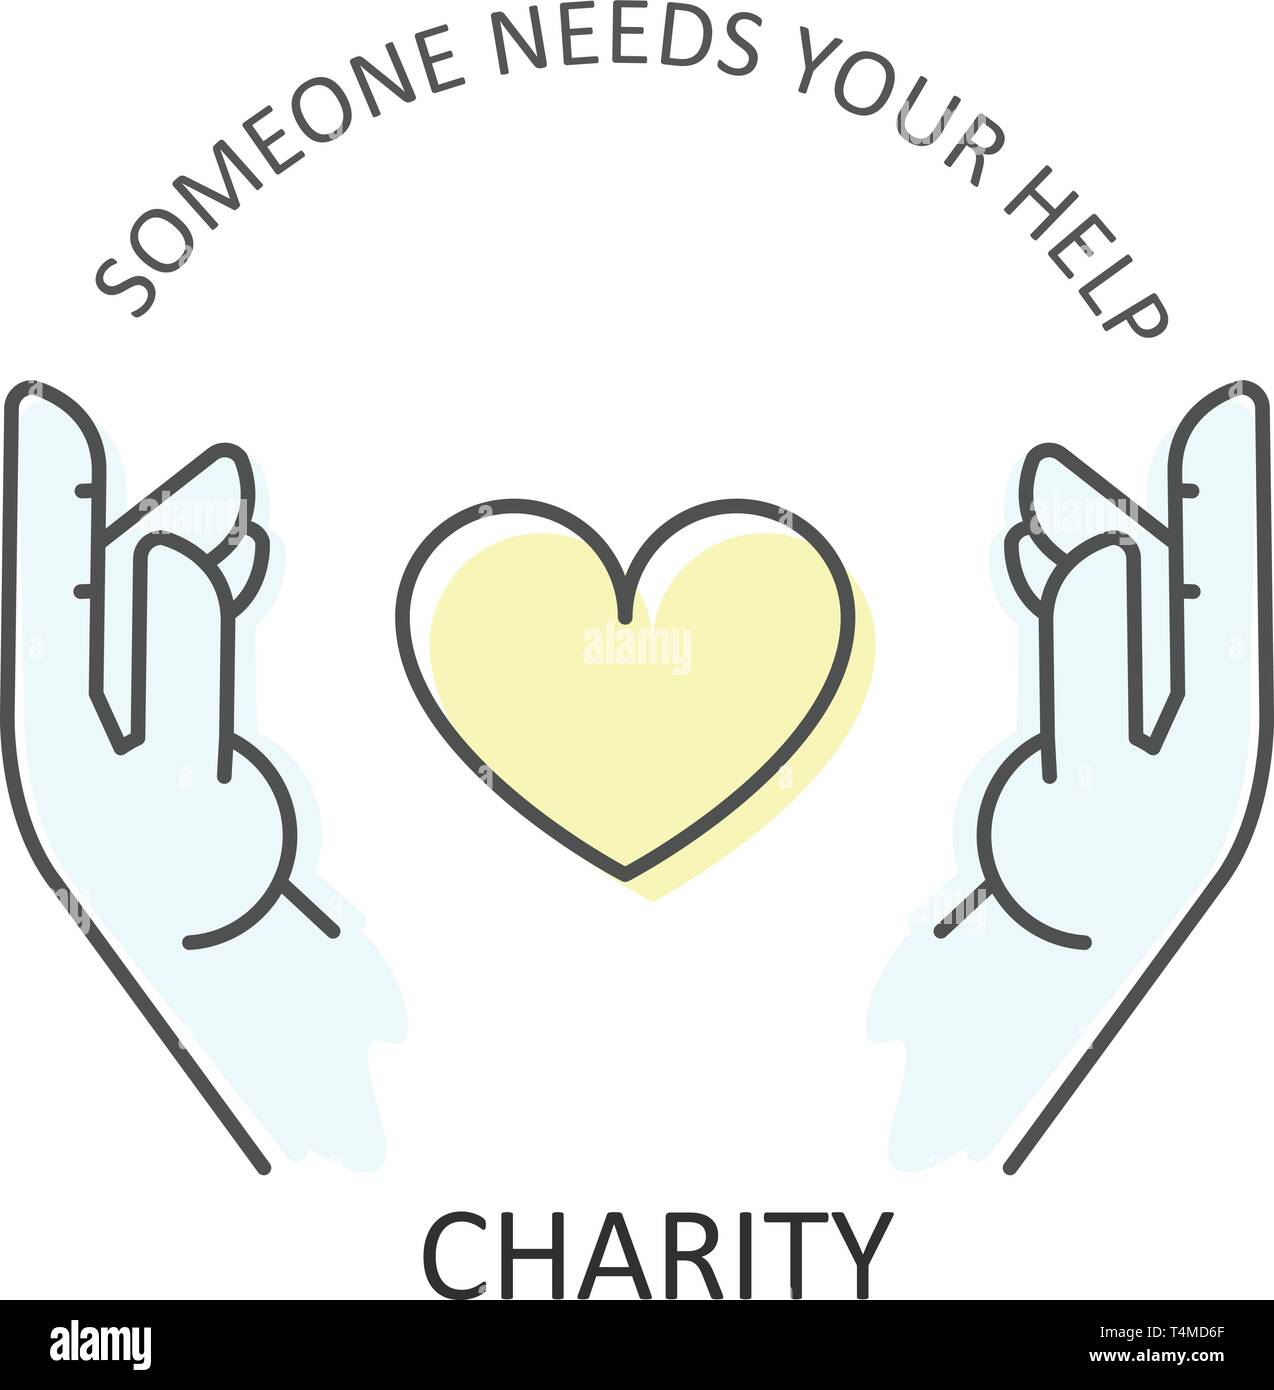 Hände umfasst Herz - Charity, Spenden und freiwillige Hilfe Konzept Stock Vektor